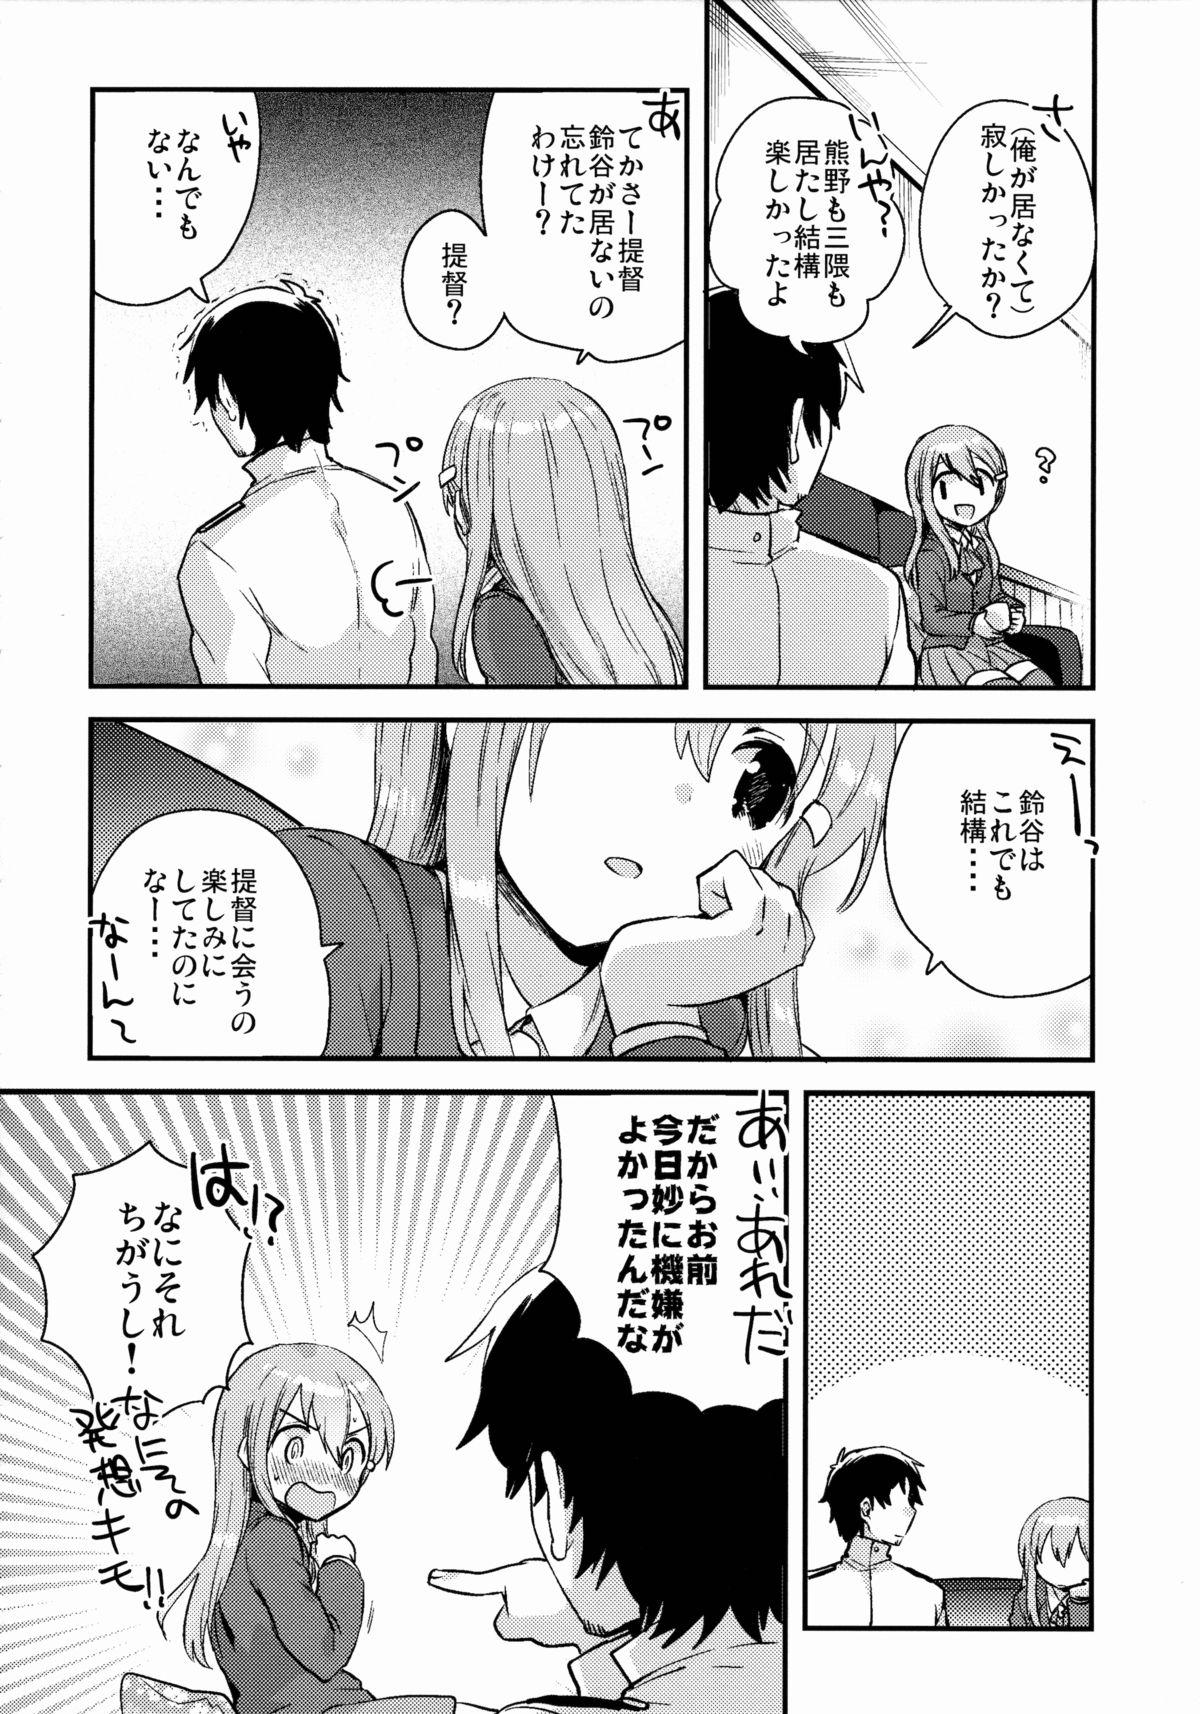 Fodendo Teitoku, Suzuya to Tsukiawanai? - Kantai collection Bus - Page 5